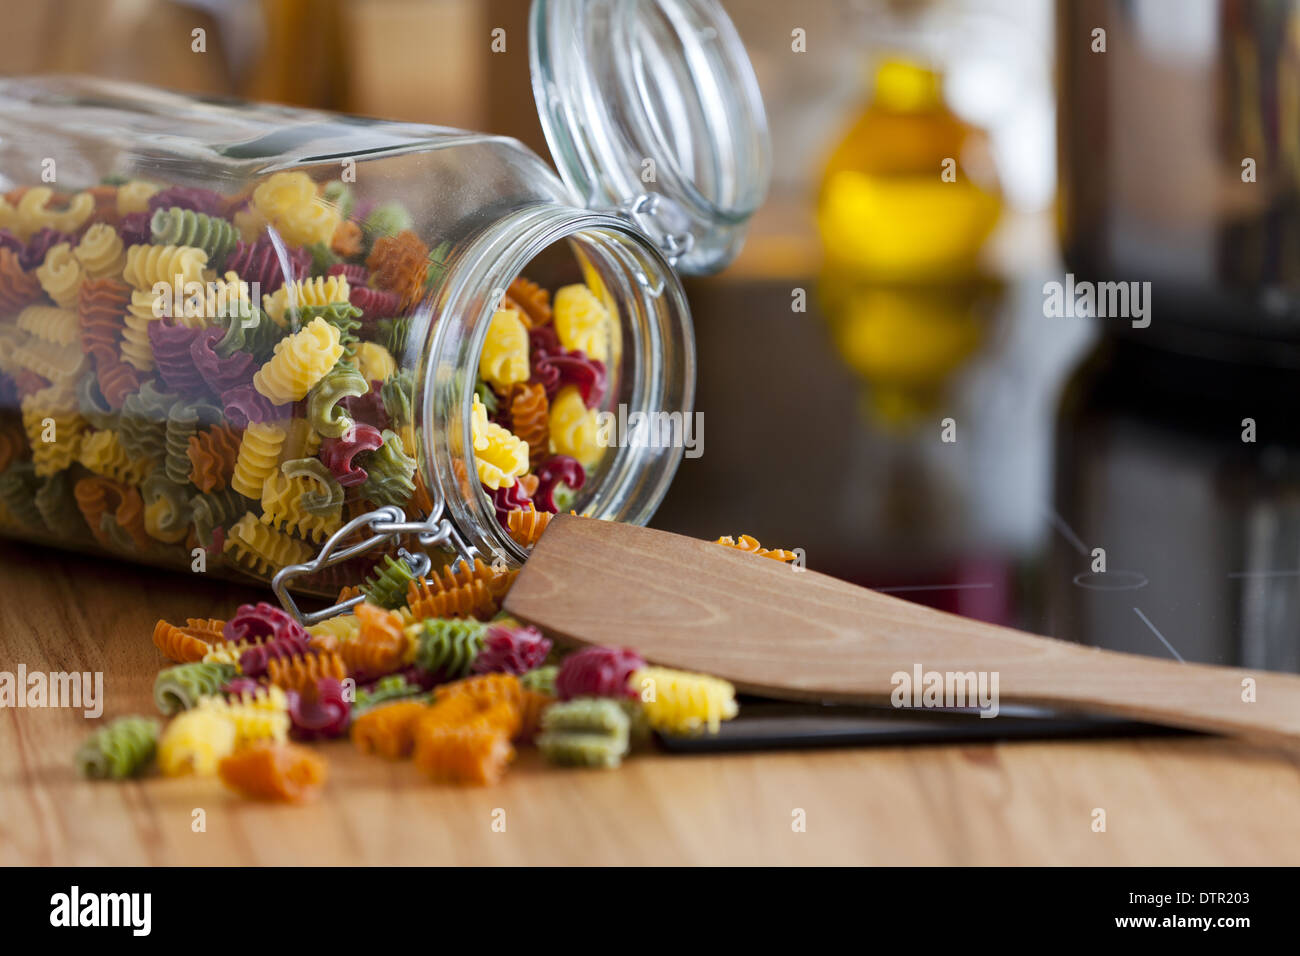 Nahaufnahme von einem offenen Lagerung Jar mit bunten Nudeln mit textfreiraum im rechten Bereich des Bildes Stockfoto